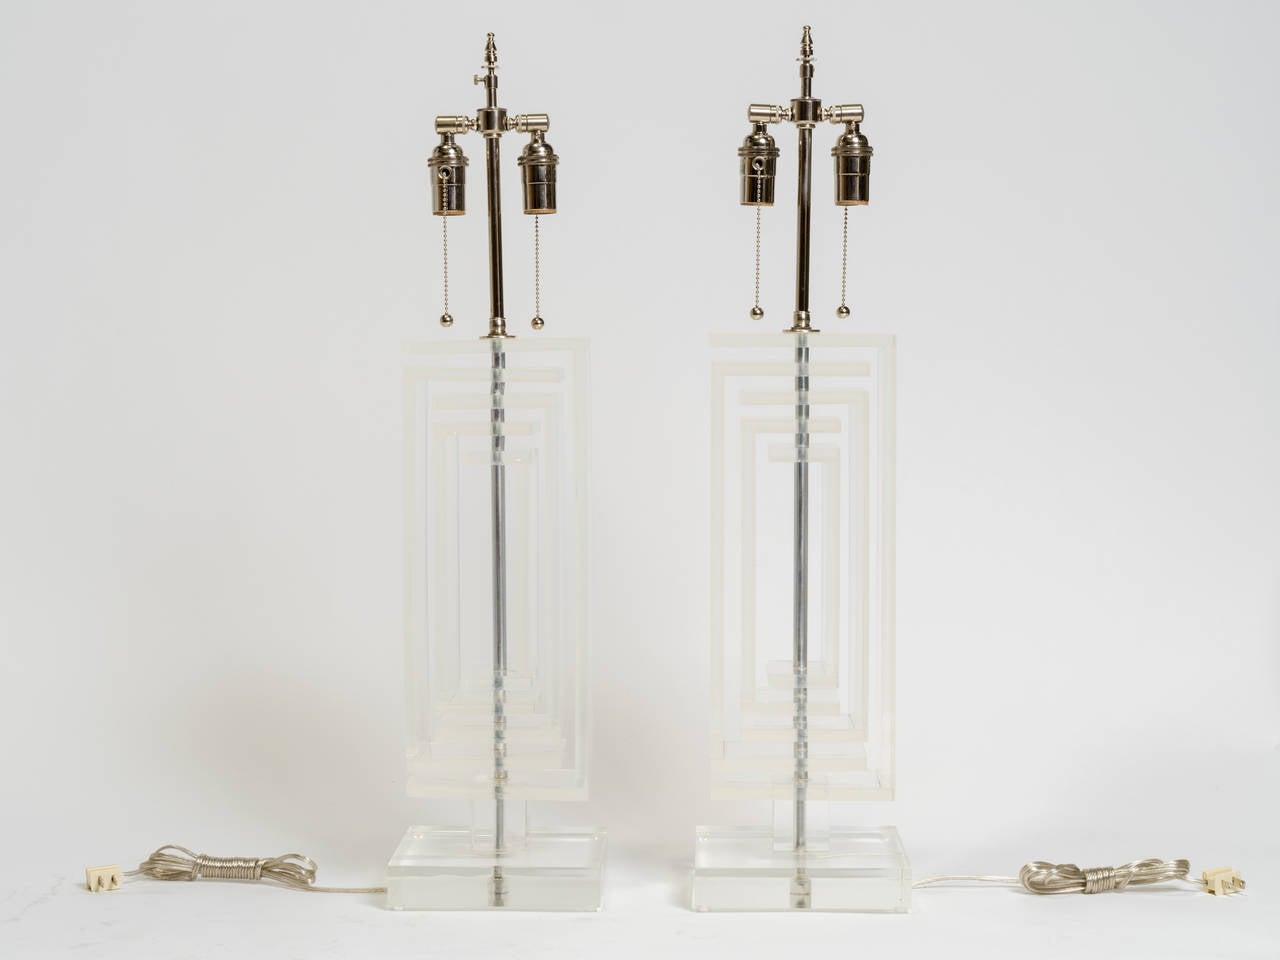 Ein Paar moderner geometrischer Lampen.
Professionell neu verkabelt mit neuen verstellbaren Doppelzug-Kettensteckdosen.